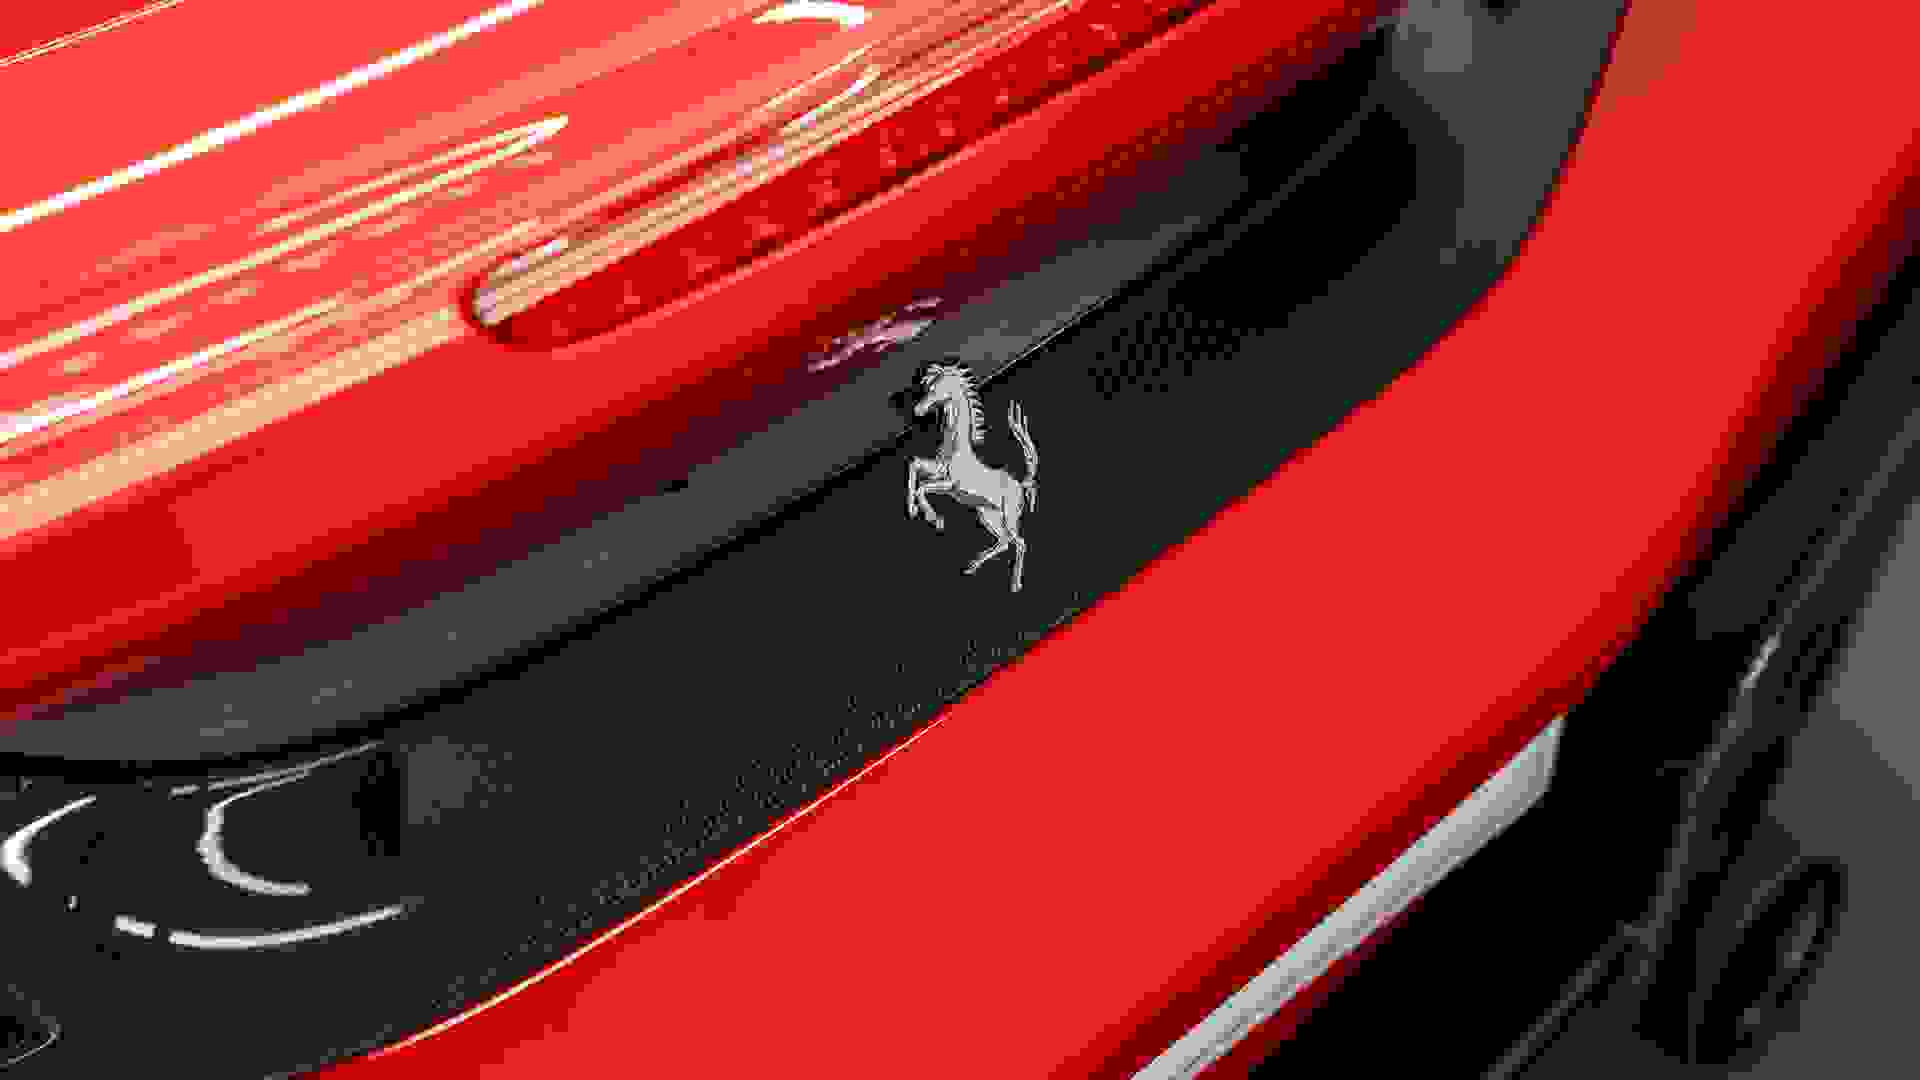 Ferrari 488 Photo 0cc9d1c4-132a-4c05-84e0-454892cc1fbe.jpg